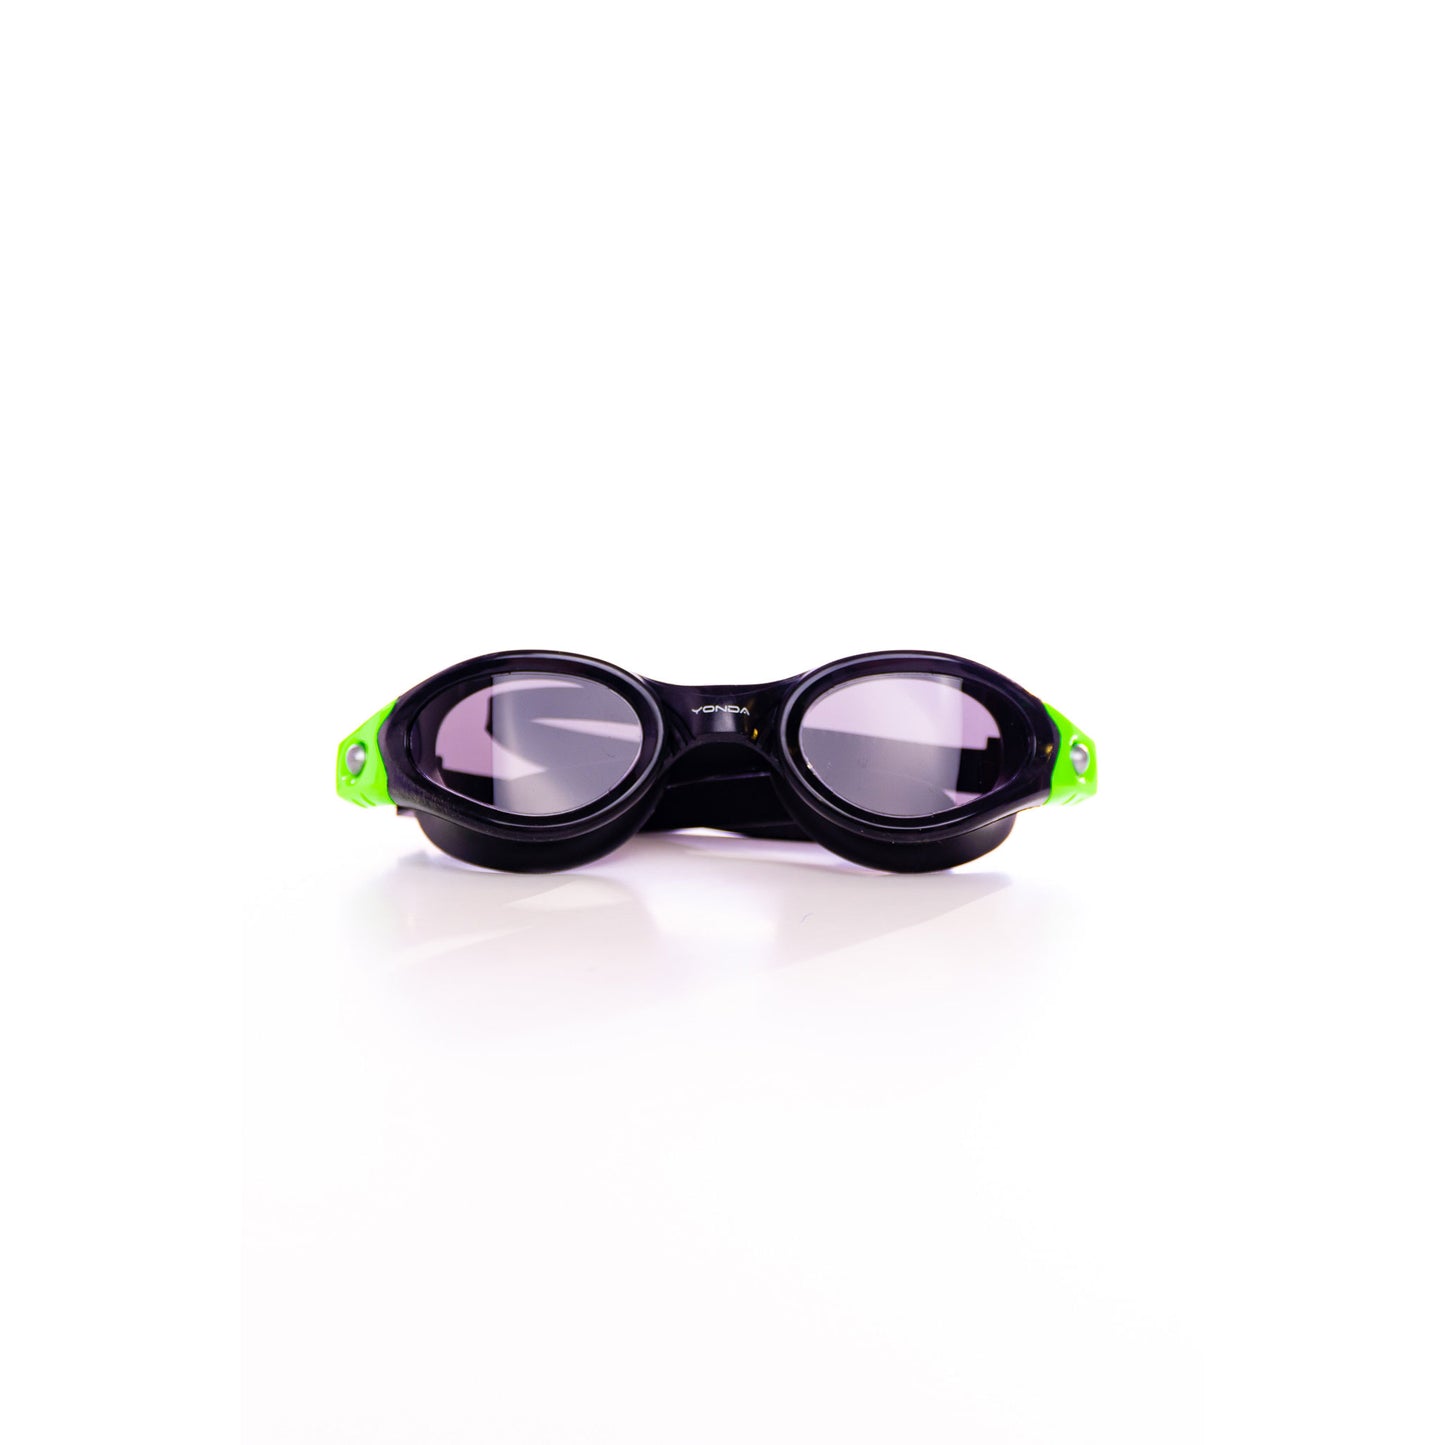 Polarised goggles